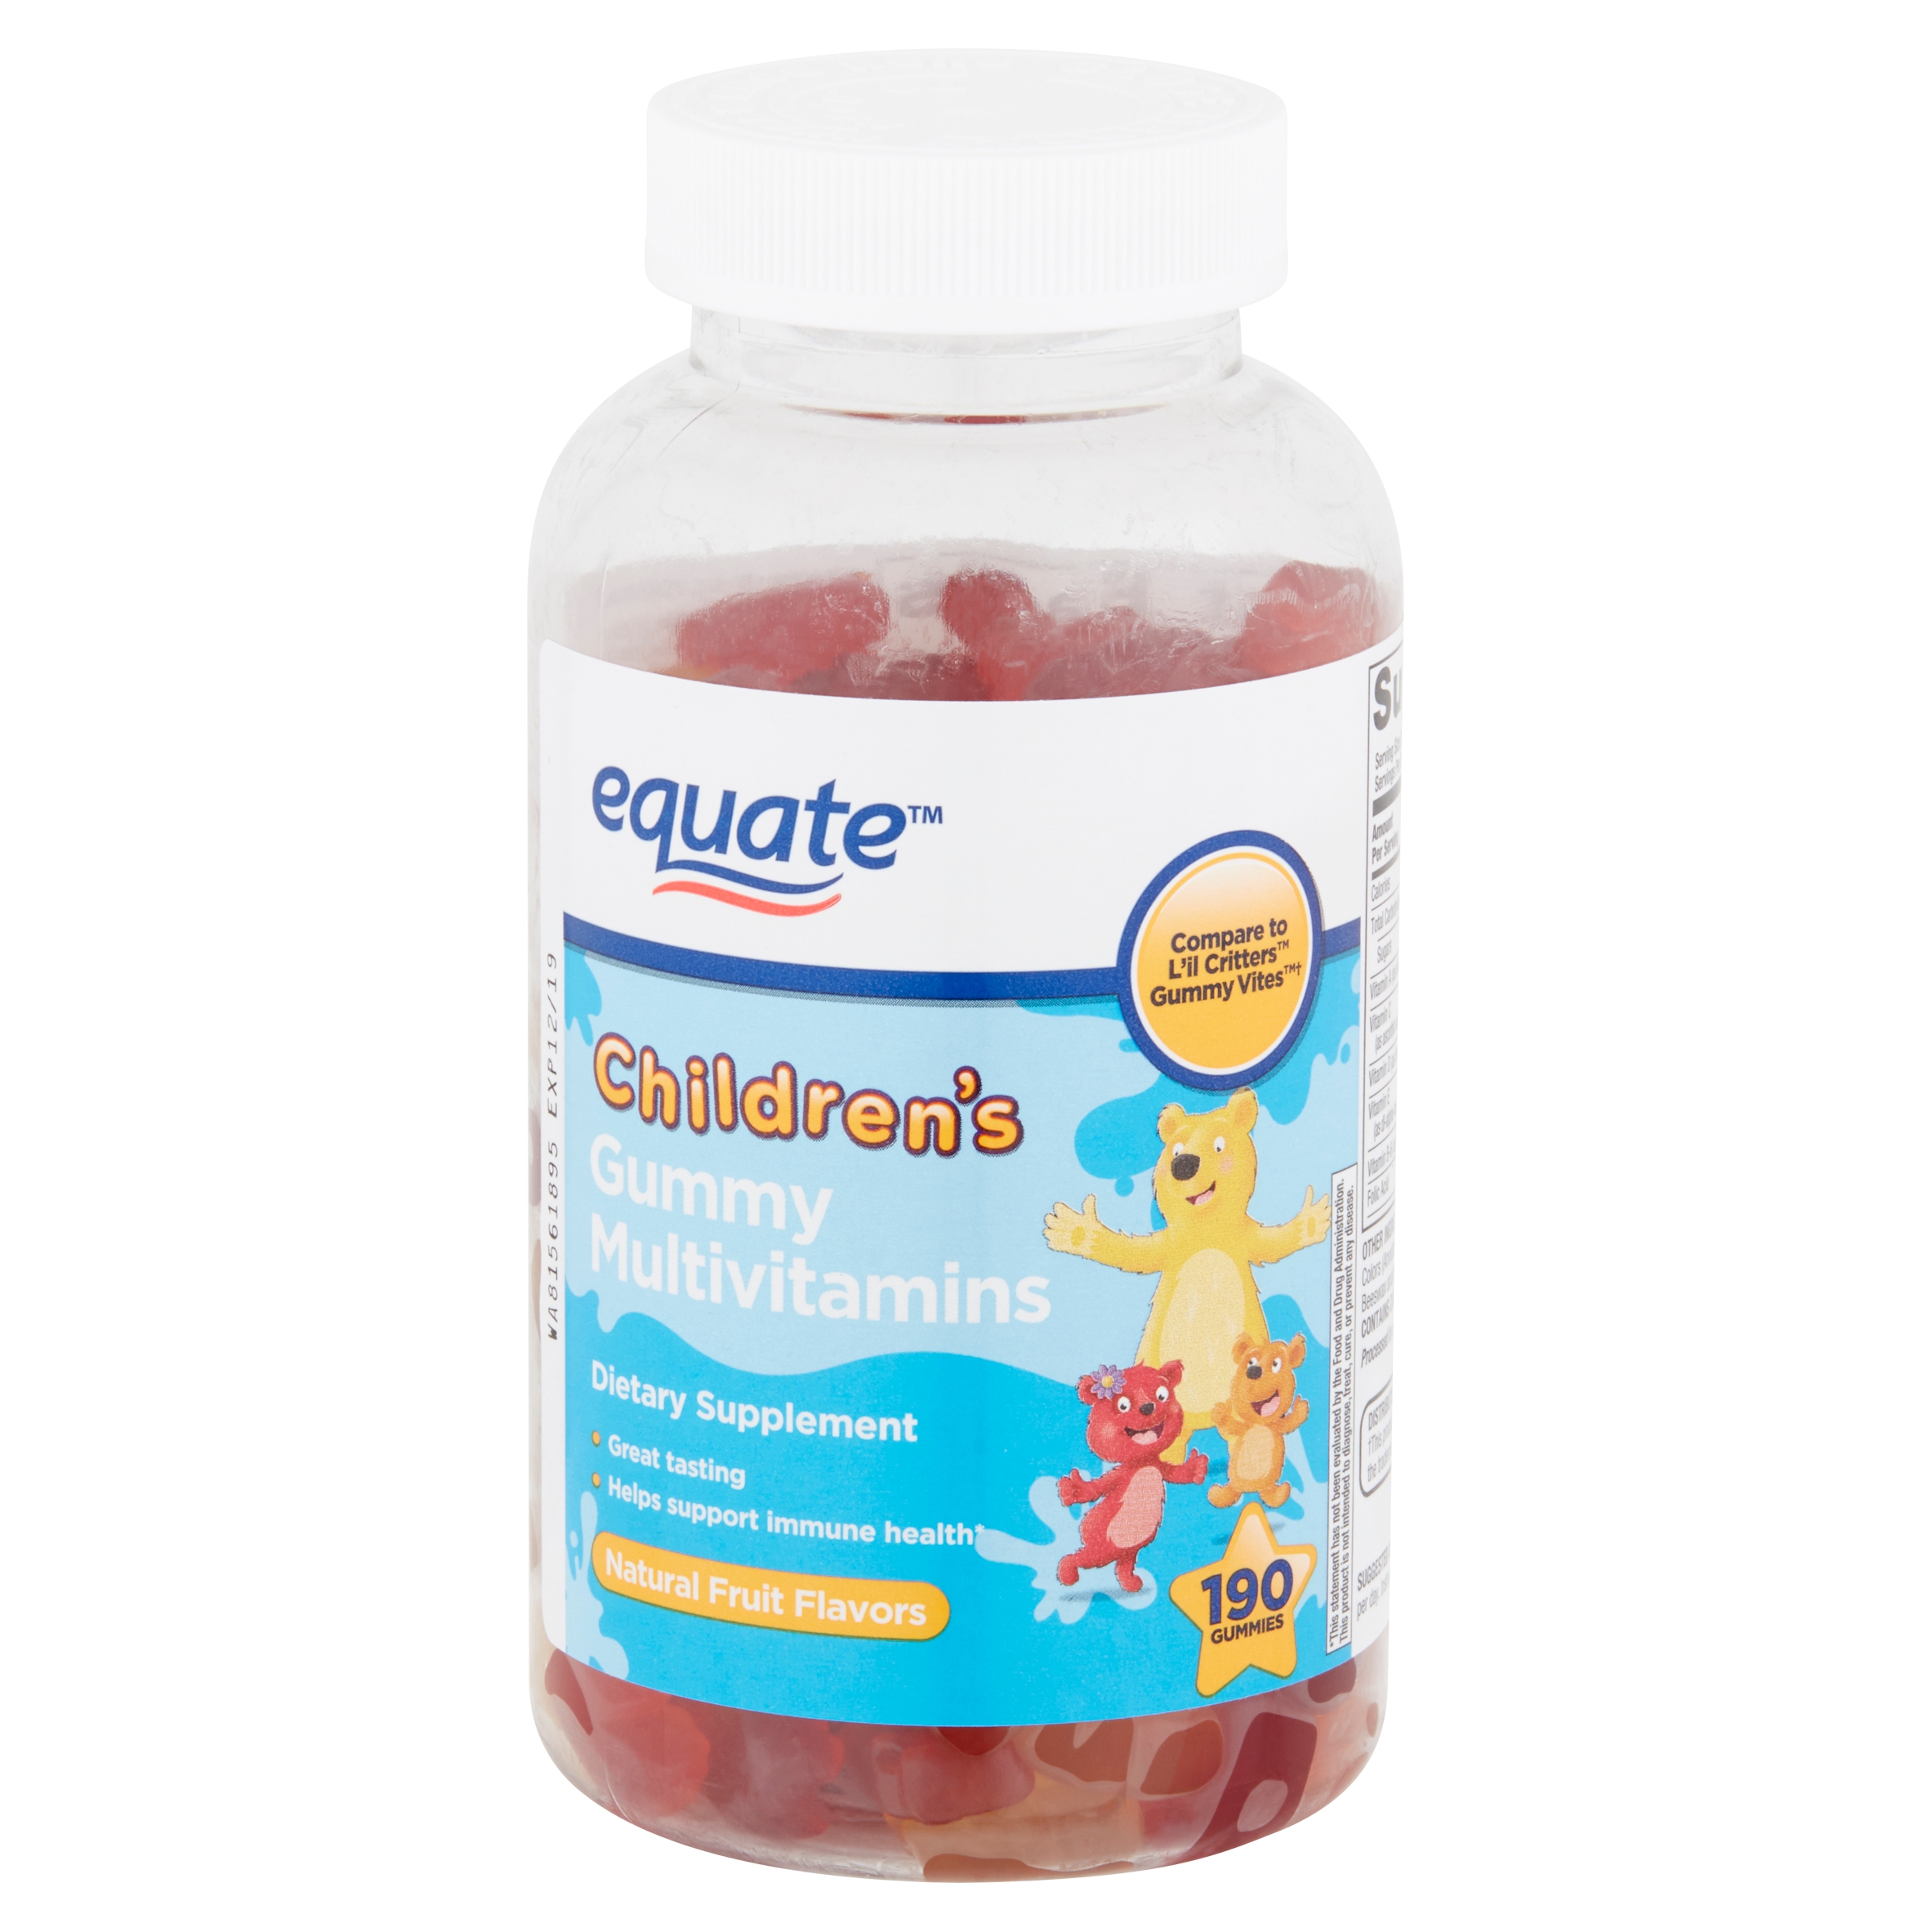 Equate Children's Multivitamins Gummies, 190 count - image 1 of 7